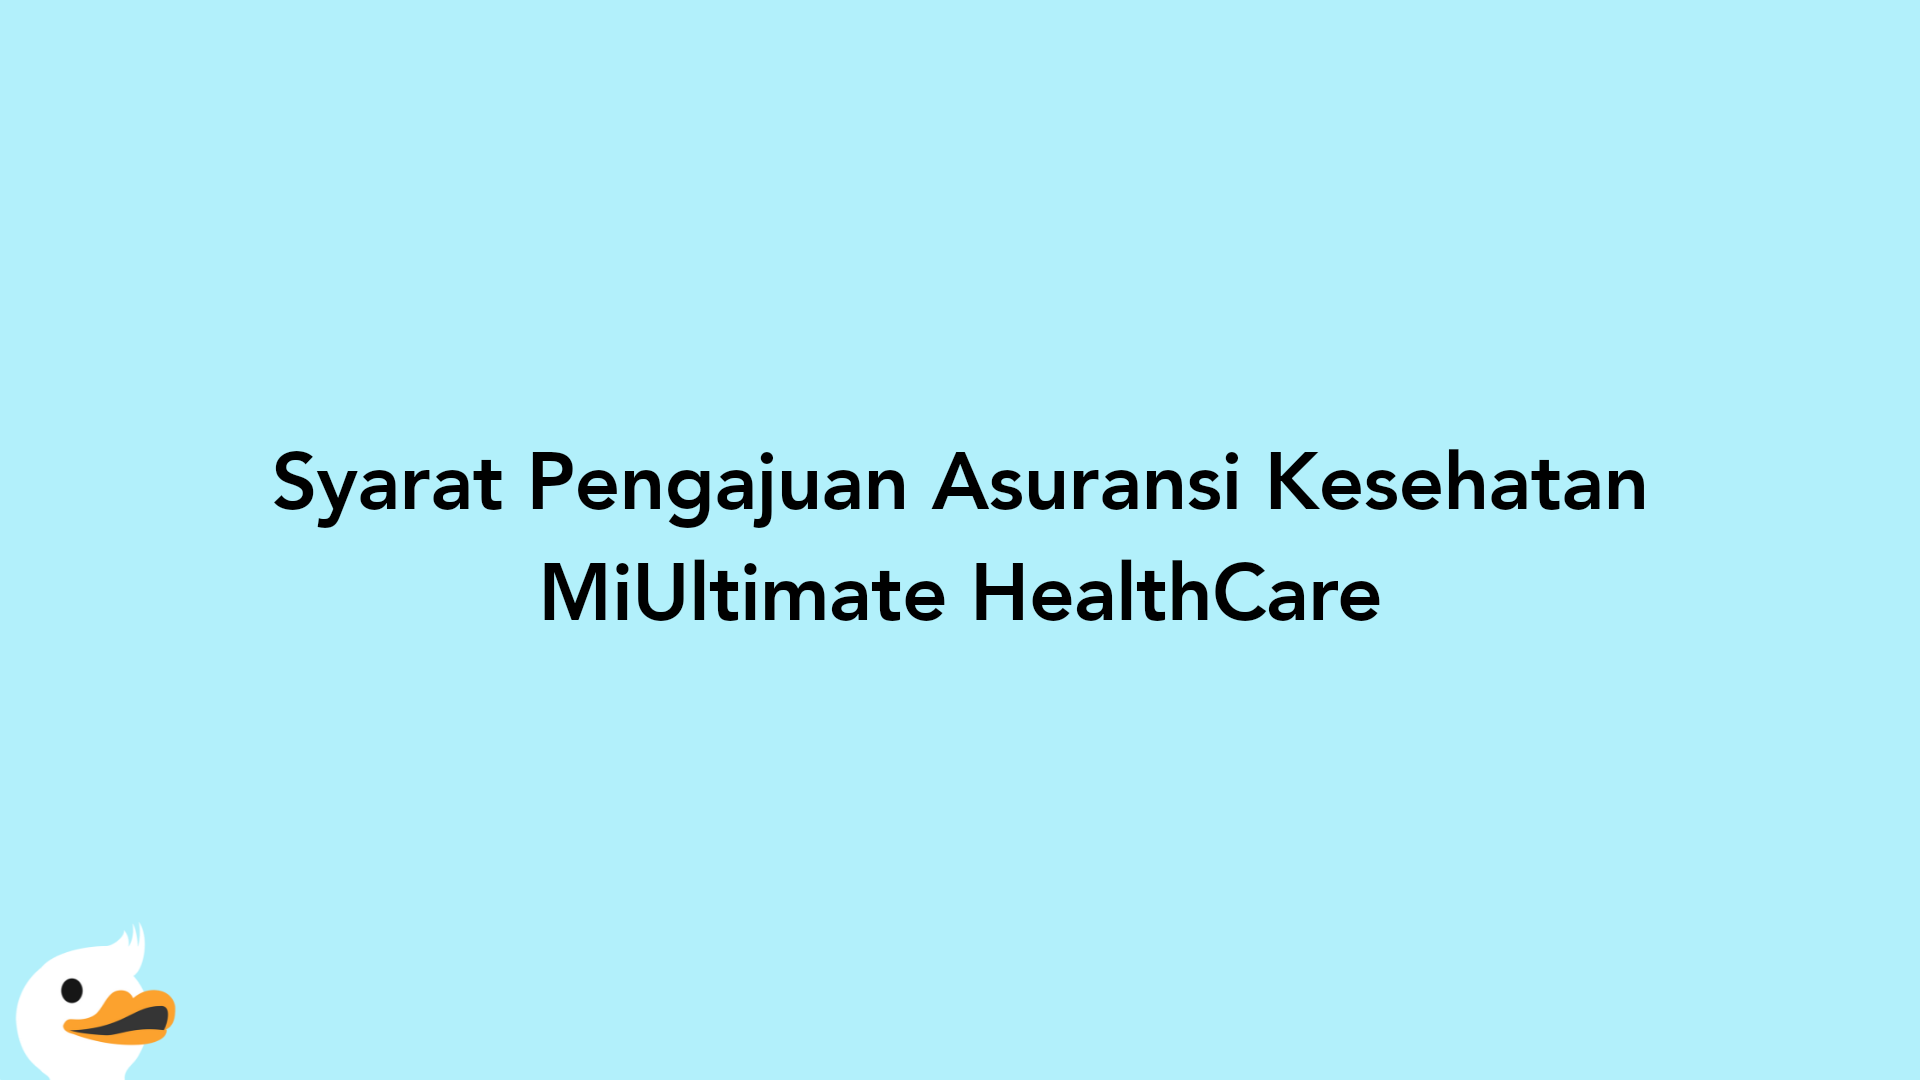 Syarat Pengajuan Asuransi Kesehatan MiUltimate HealthCare